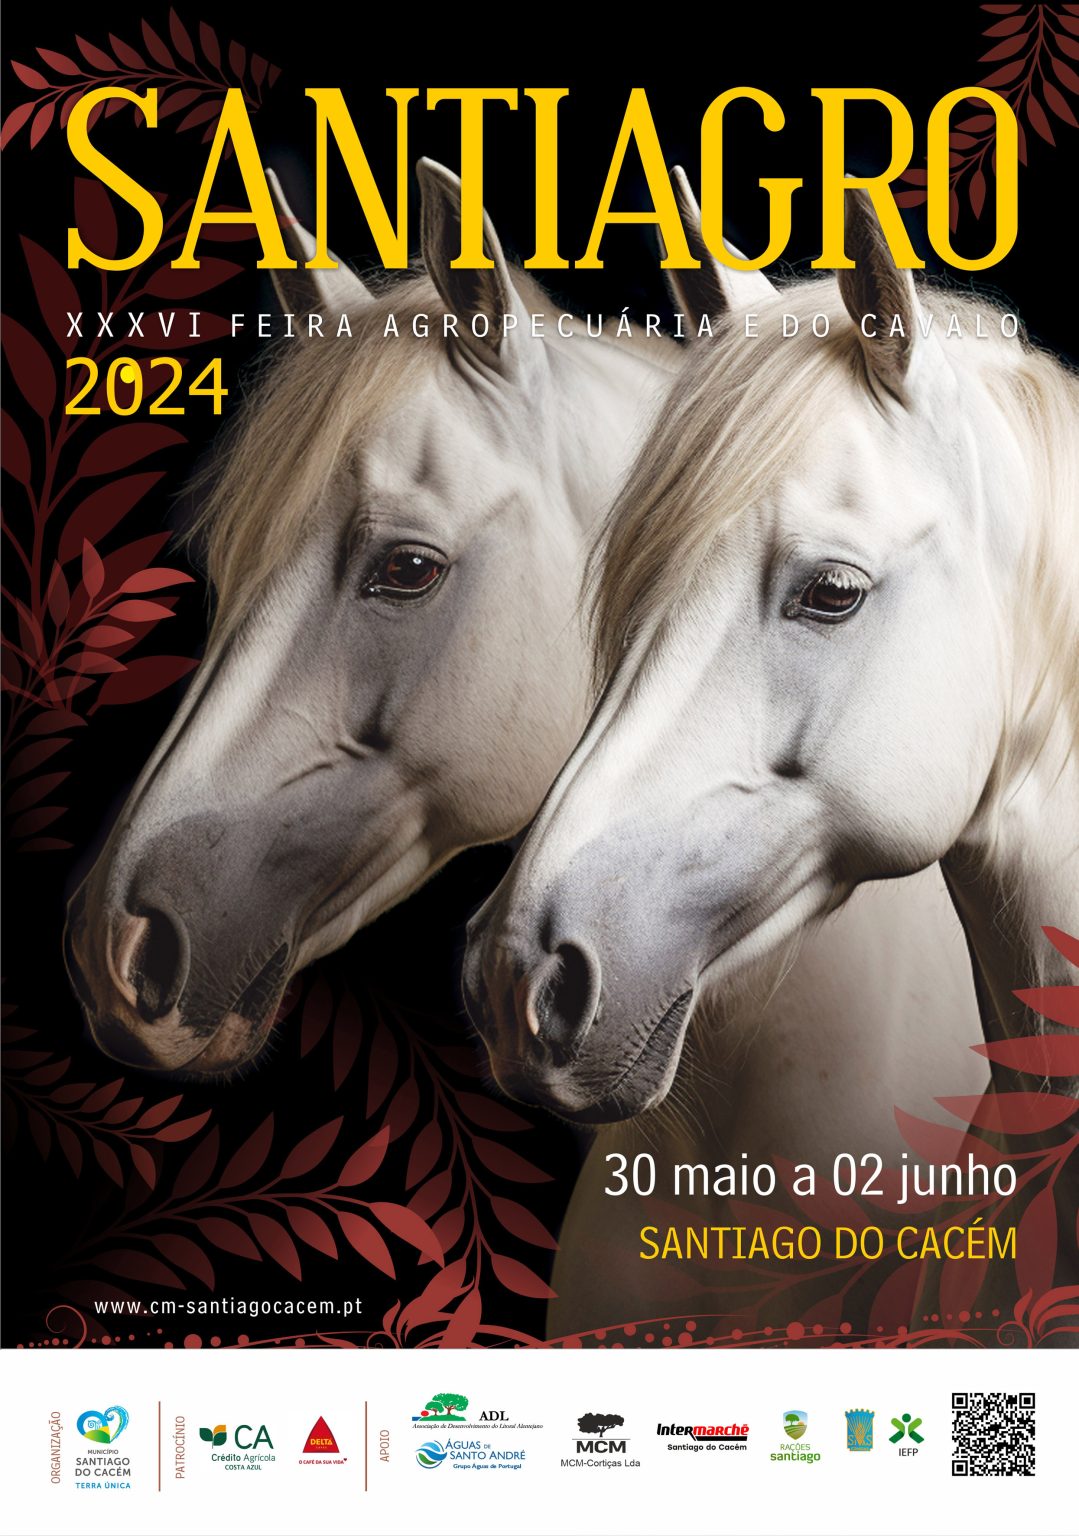 SANTIAGRO 2024 | XXXVI FEIRA AGROPECUÁRIA E DO CAVALO